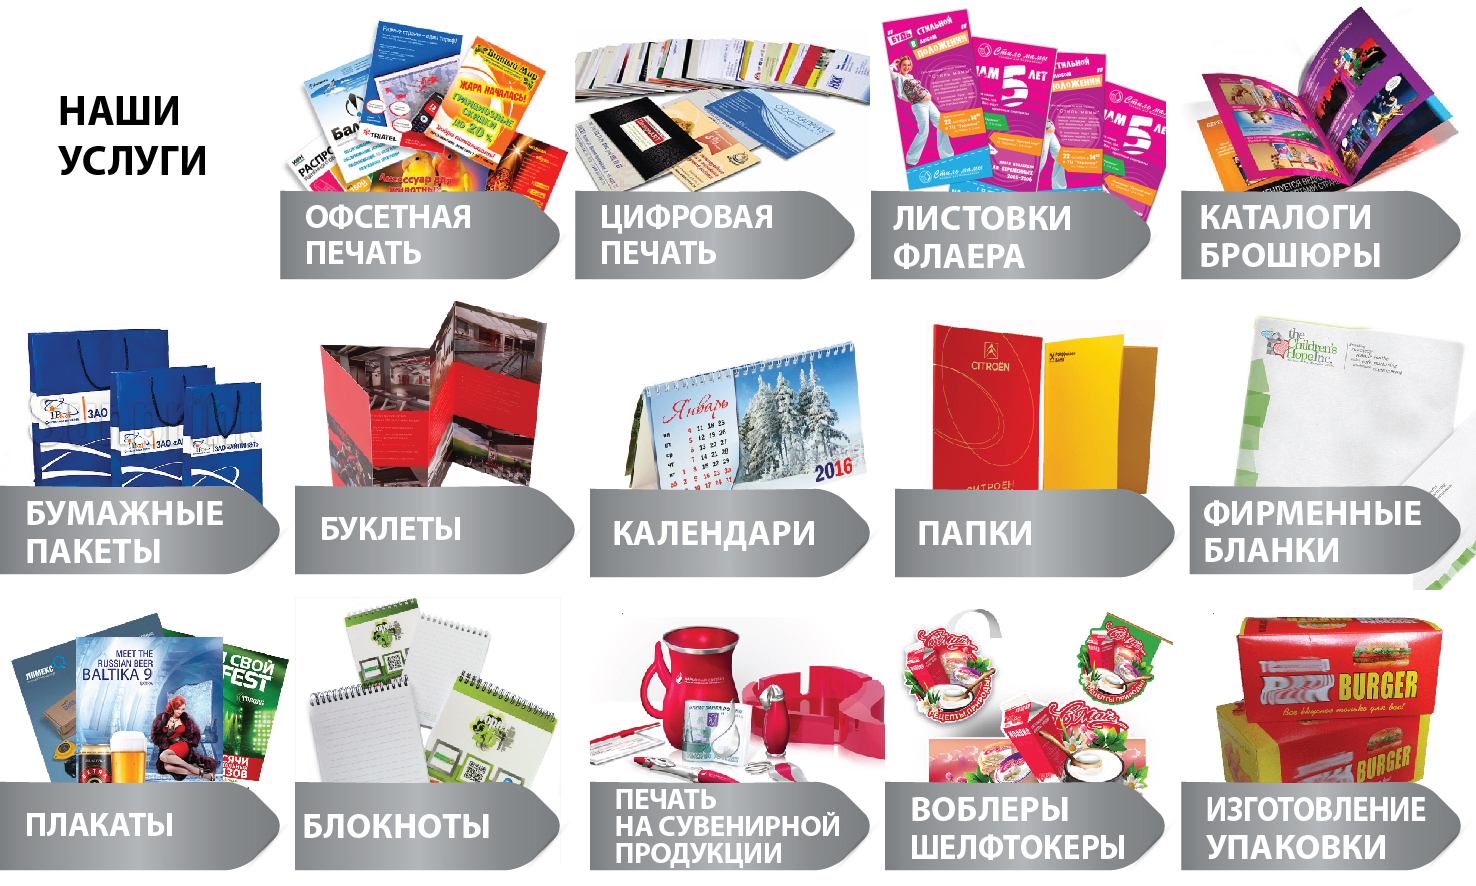 Московская типография изготовлет продукты рекламы с цифровой печатью